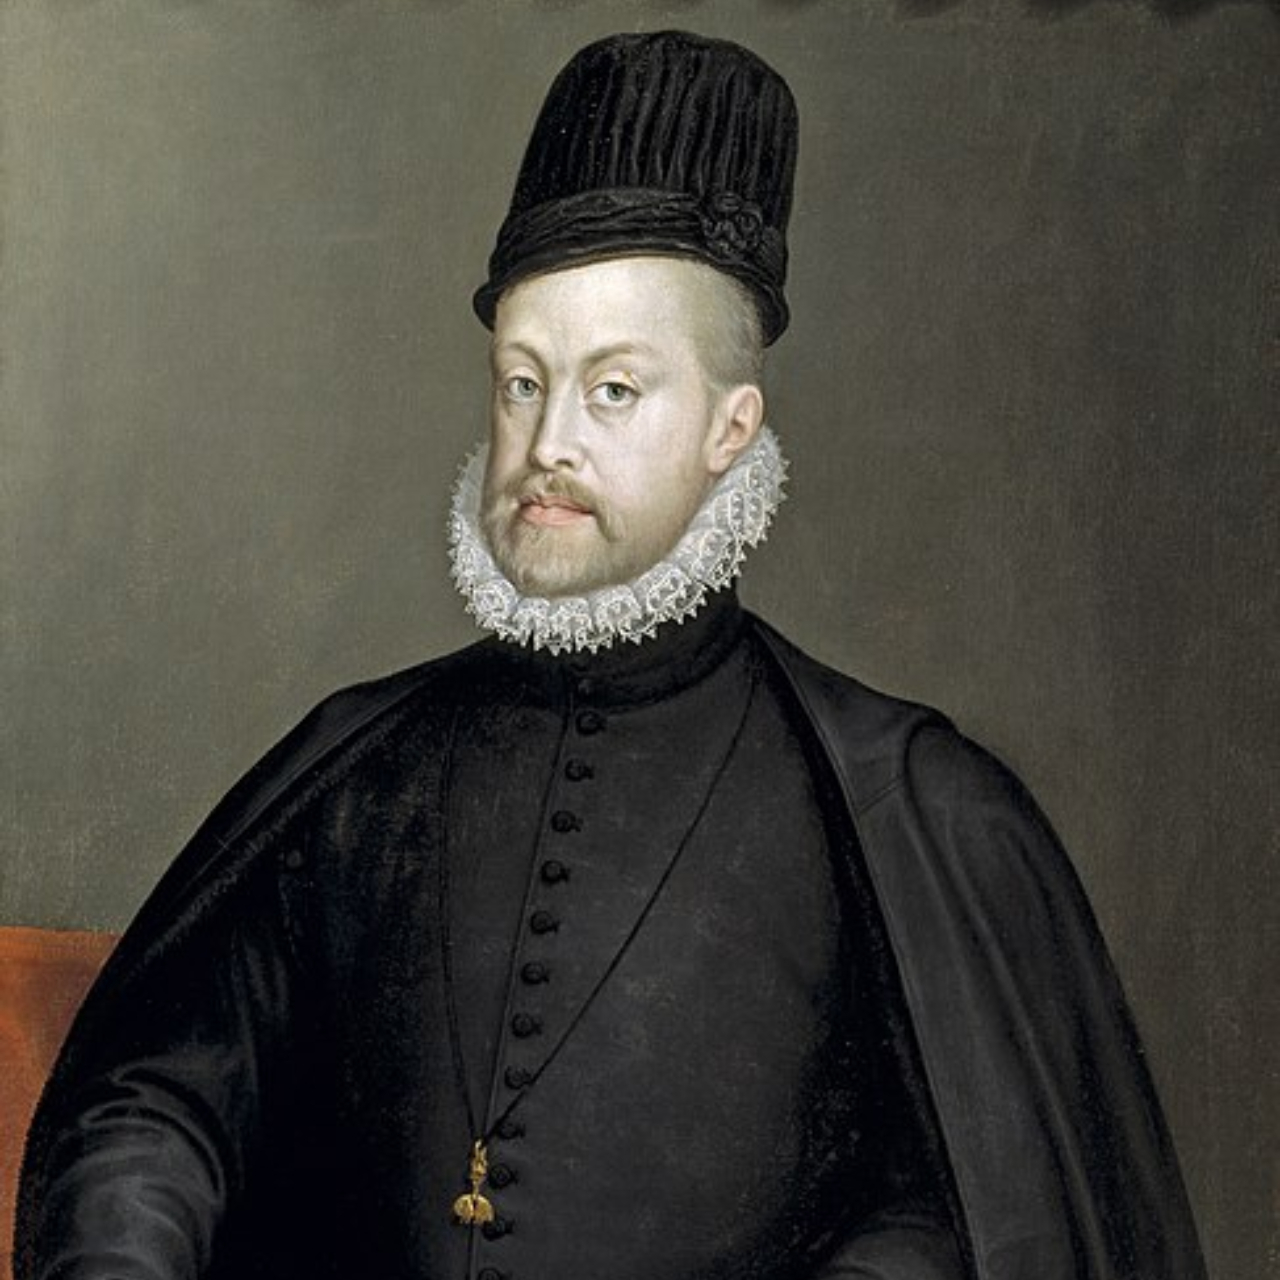 Retrato do rei Filipe II, da Espanha, feito por Sofonisba Anguissola